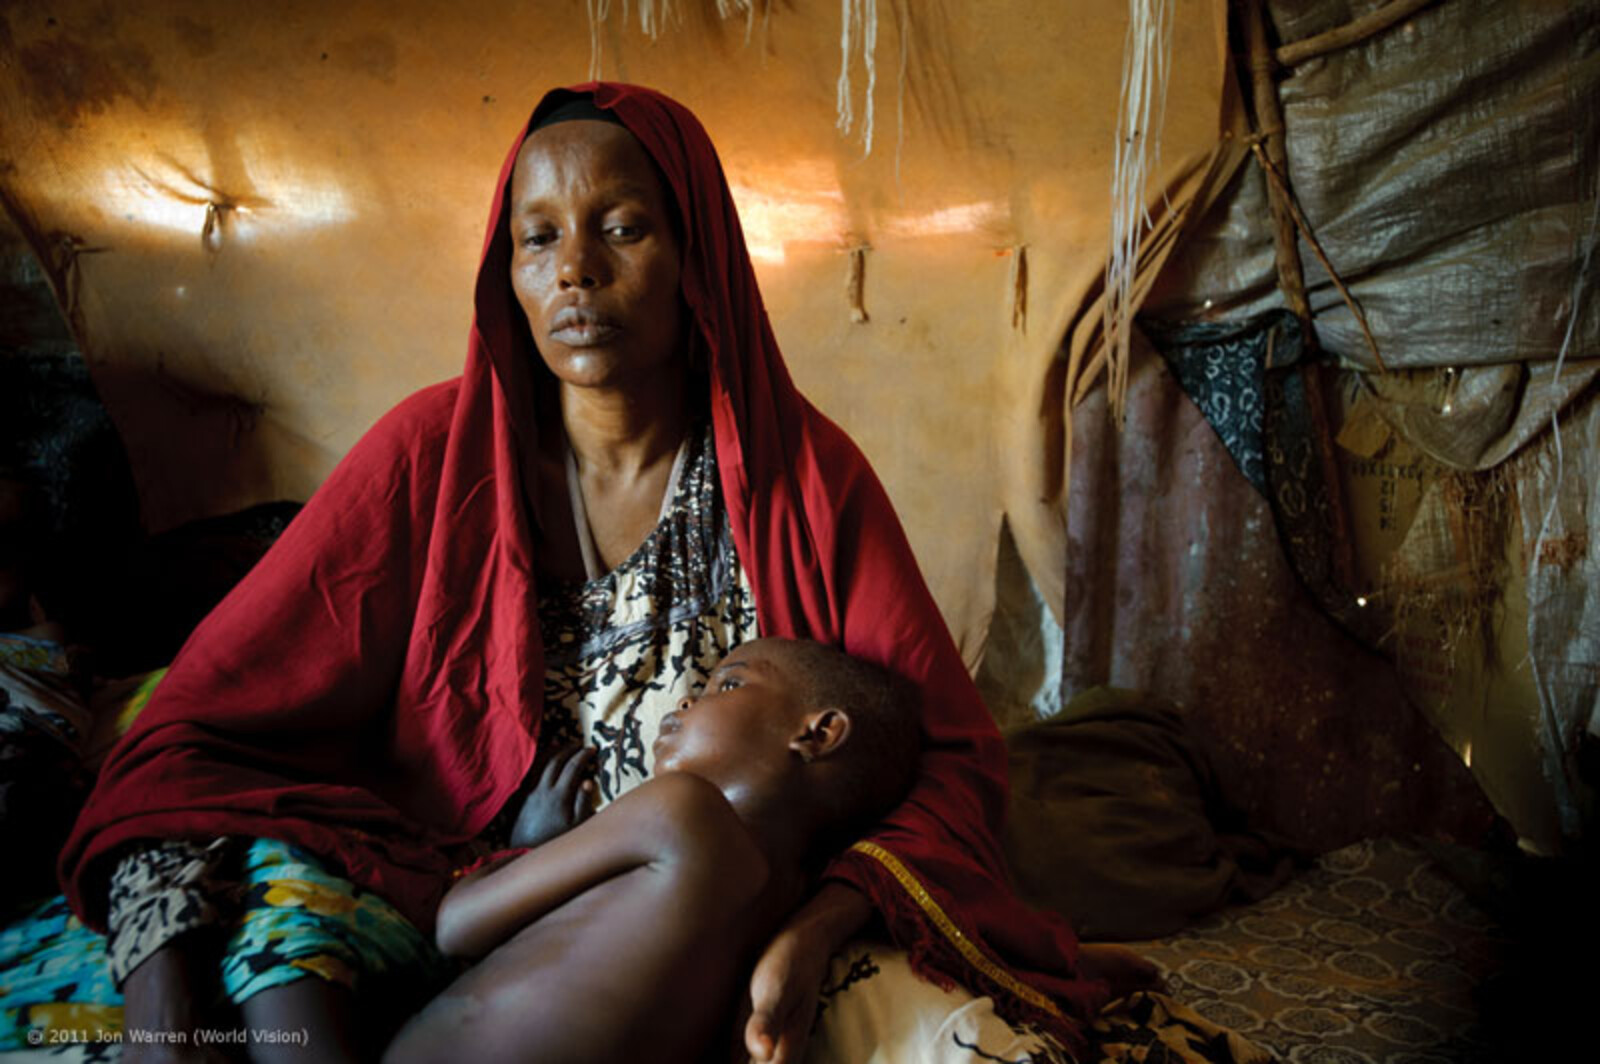 Fünfzehn Tage dauert die Reise zum Muuse Rootile Camp in Puntland, Somalia. Gaalo Adan Ali, 45 Jahre alt, hat diesen Weg auf sich genommen. Sie wollte der Gewalt entfliehen und hoffte, hier etwas zu essen zu erhalten. Sie hat dabei zwei ihrer Kinder, zwei